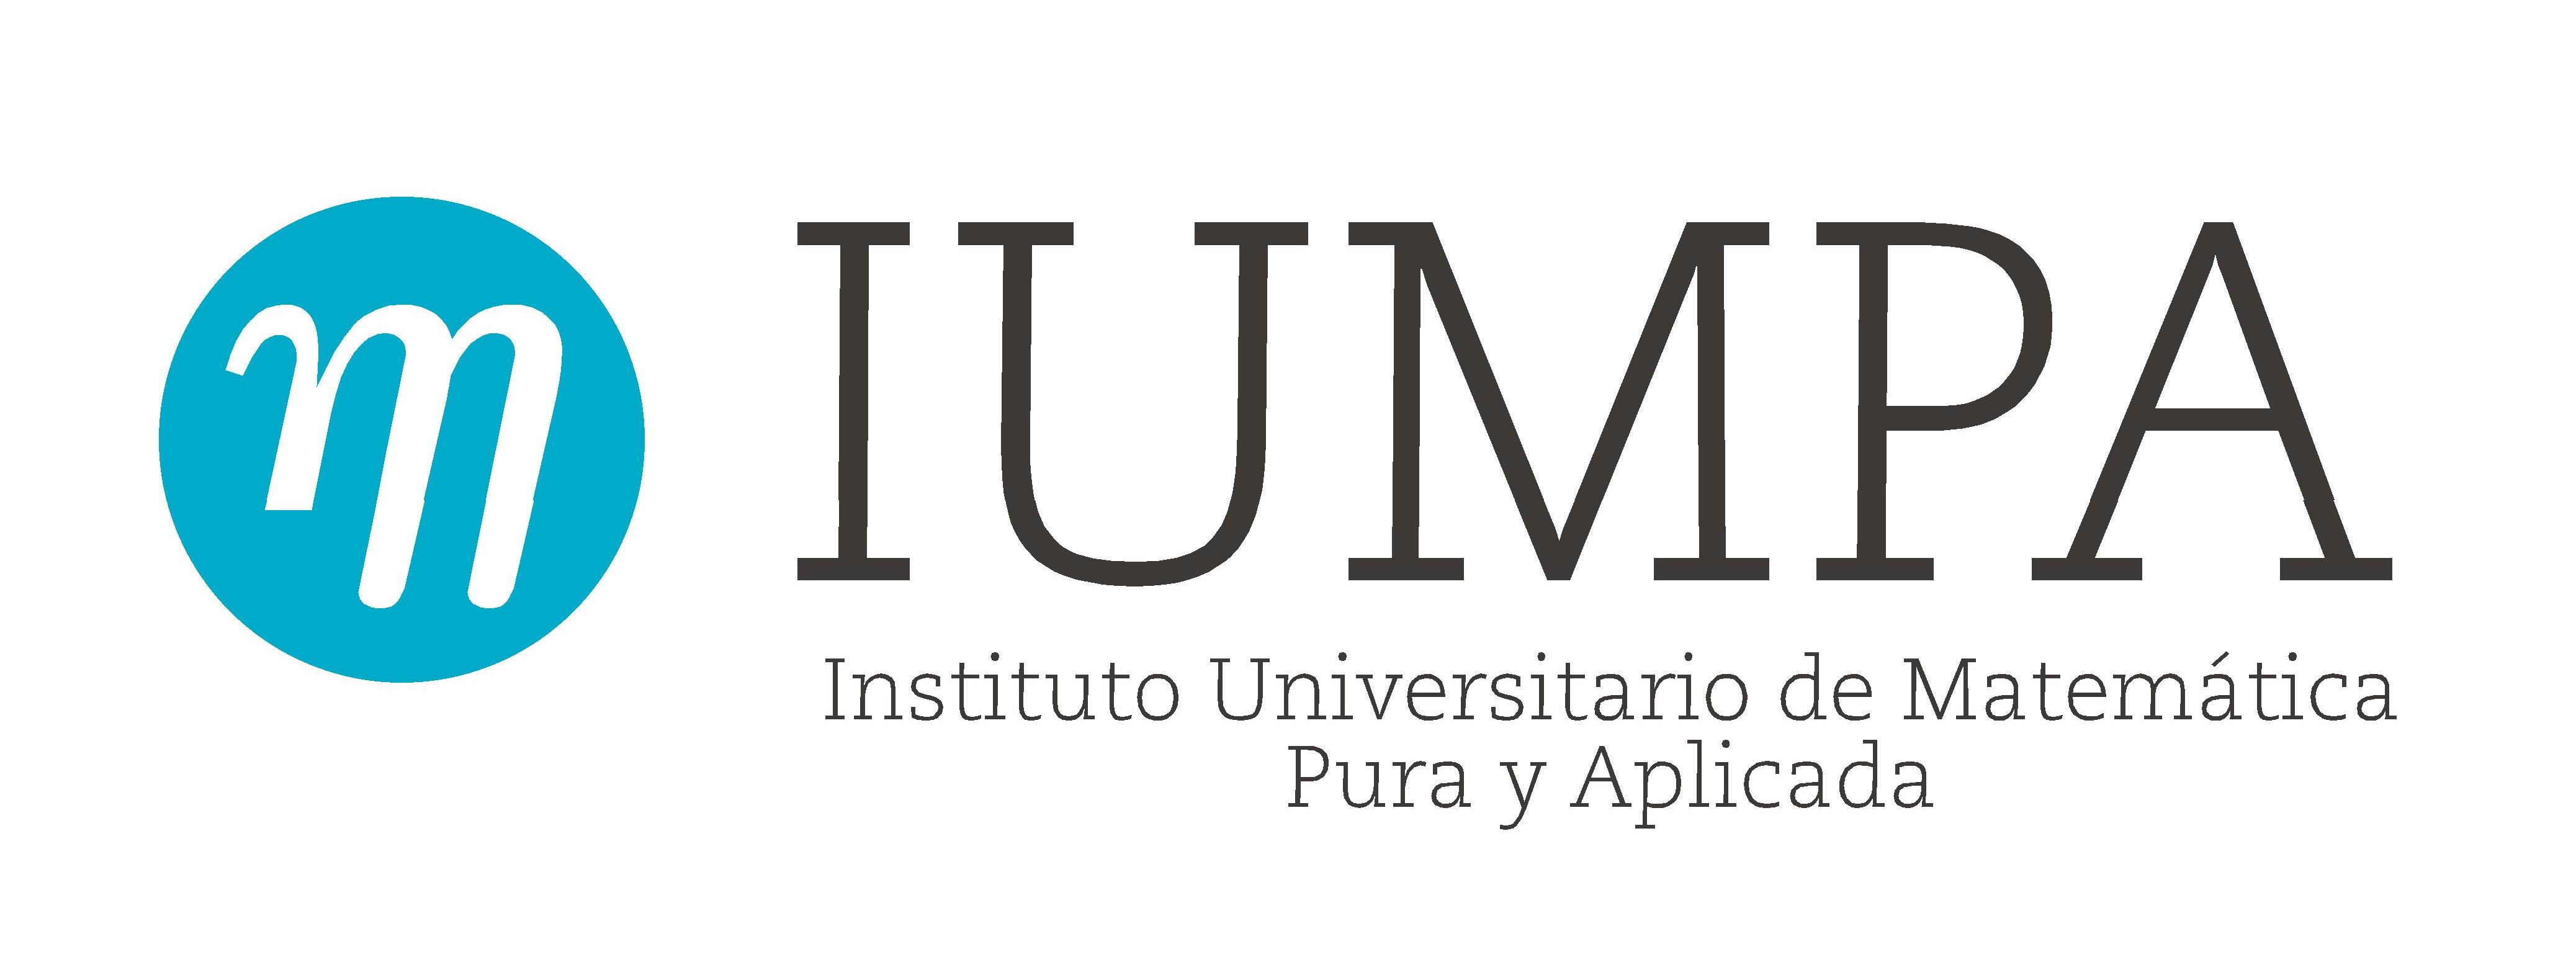 Instituto Universitario de Matemtica Pura y Aplicada